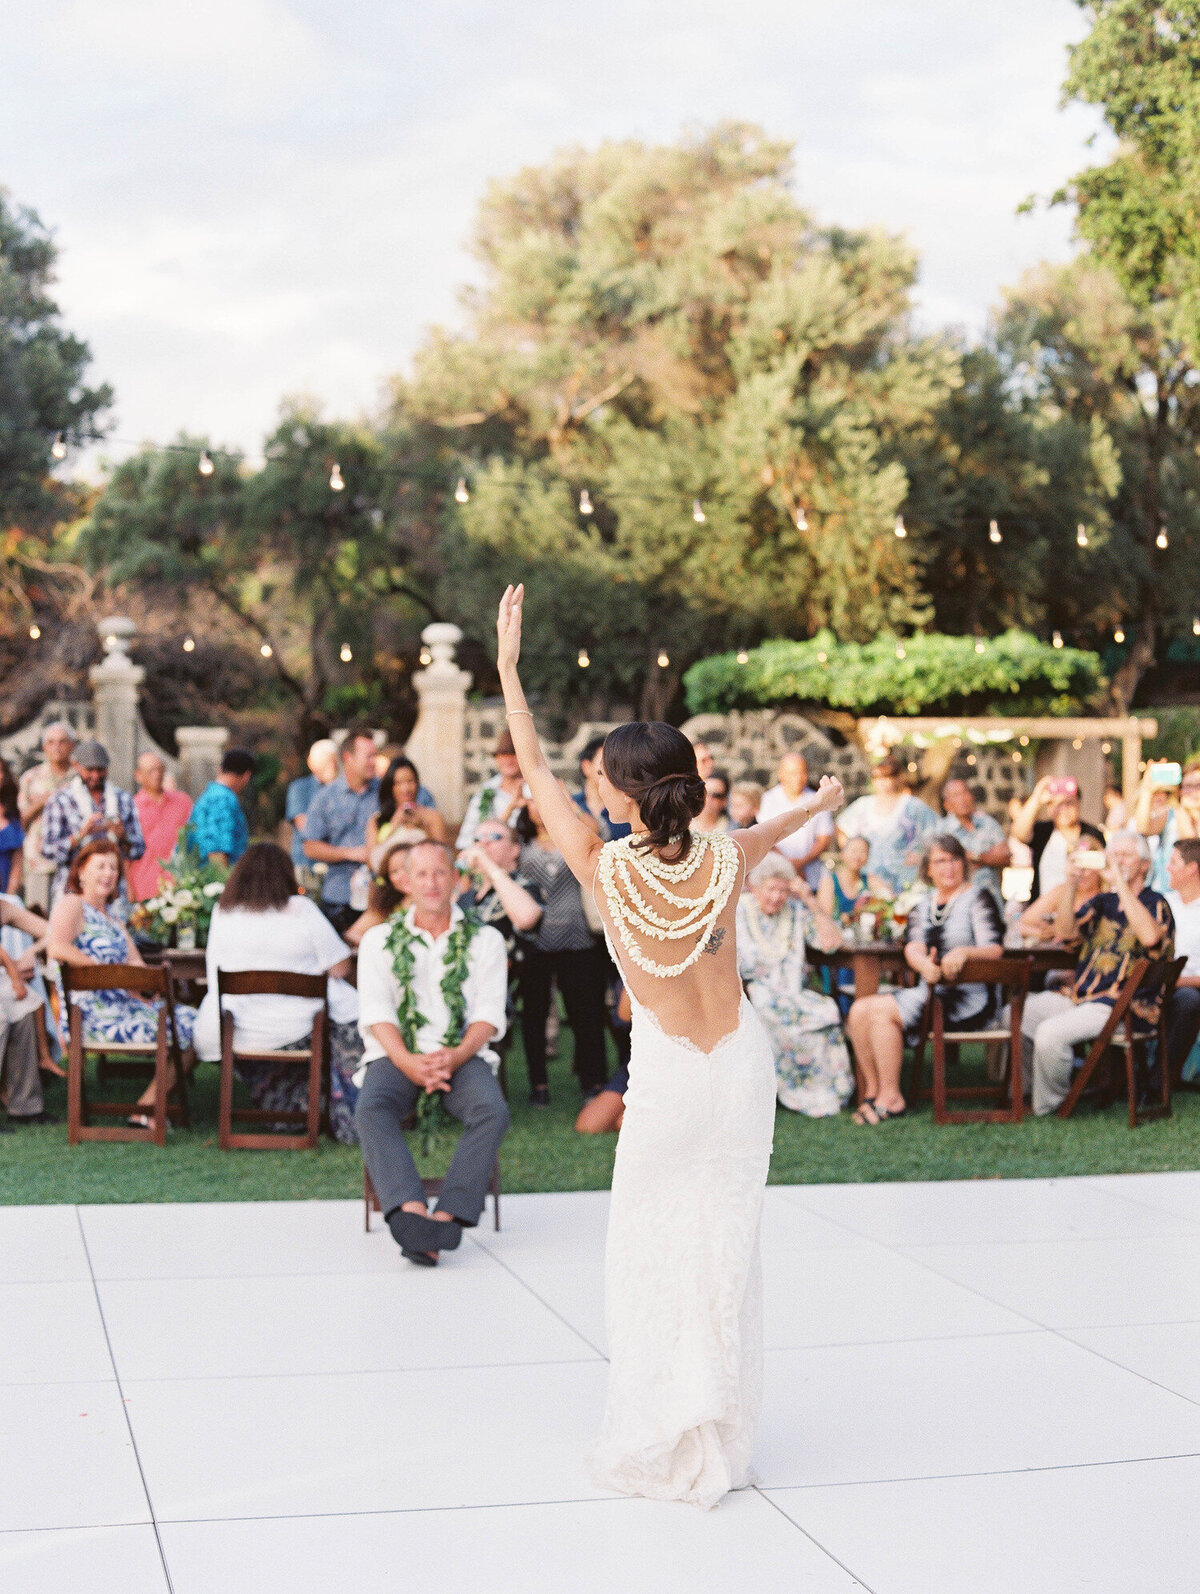 Lauren + Ian | Hawaii Wedding & Lifestyle Photography | Ashley Goodwin Photography